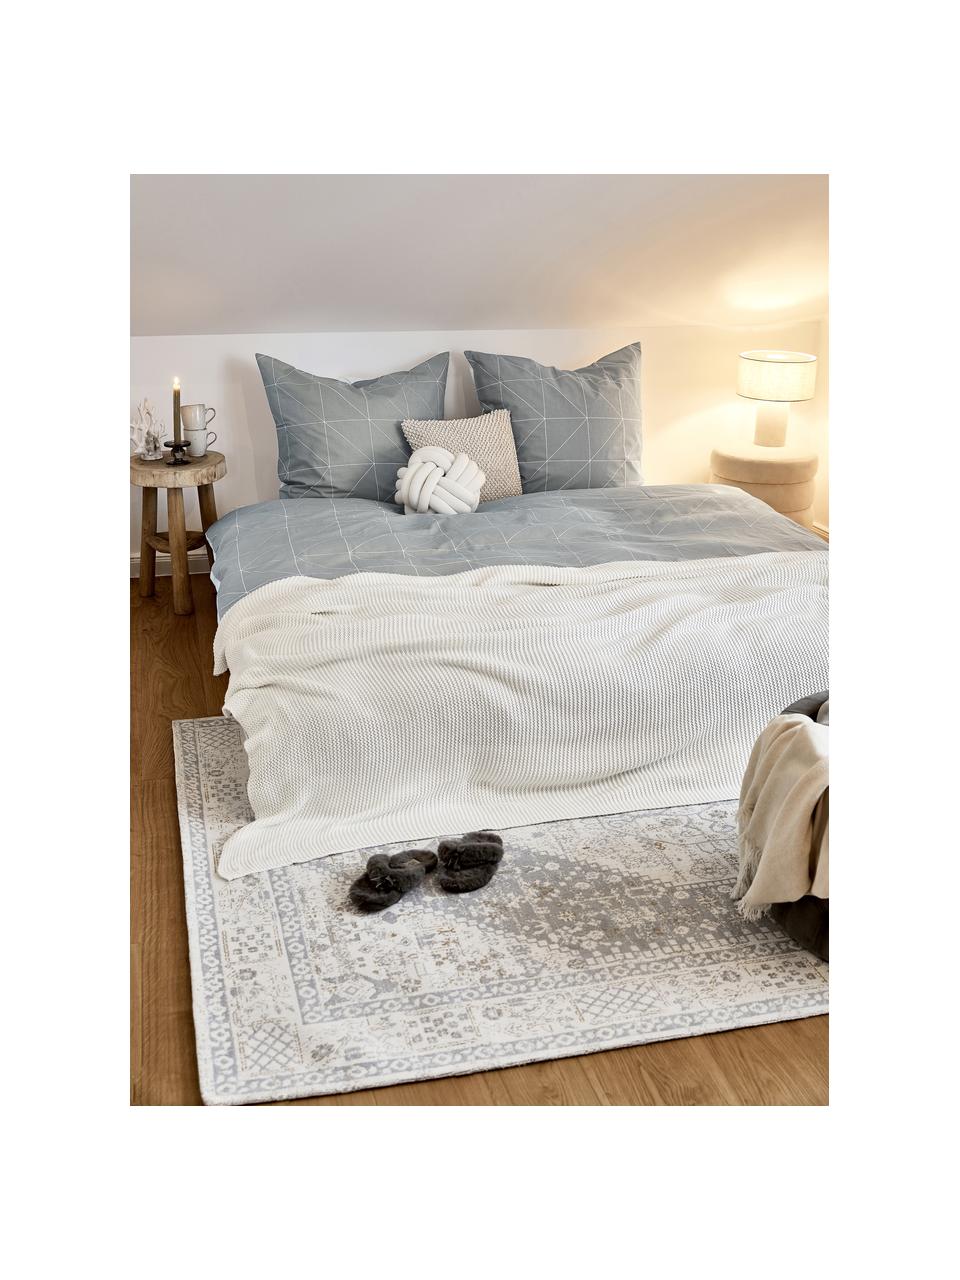 Obojstranná posteľná bielizeň z bavlny s grafickým vzorom Marla, Sivá, biela, 135 x 200 cm + 1 vankúš 80 x 80 cm